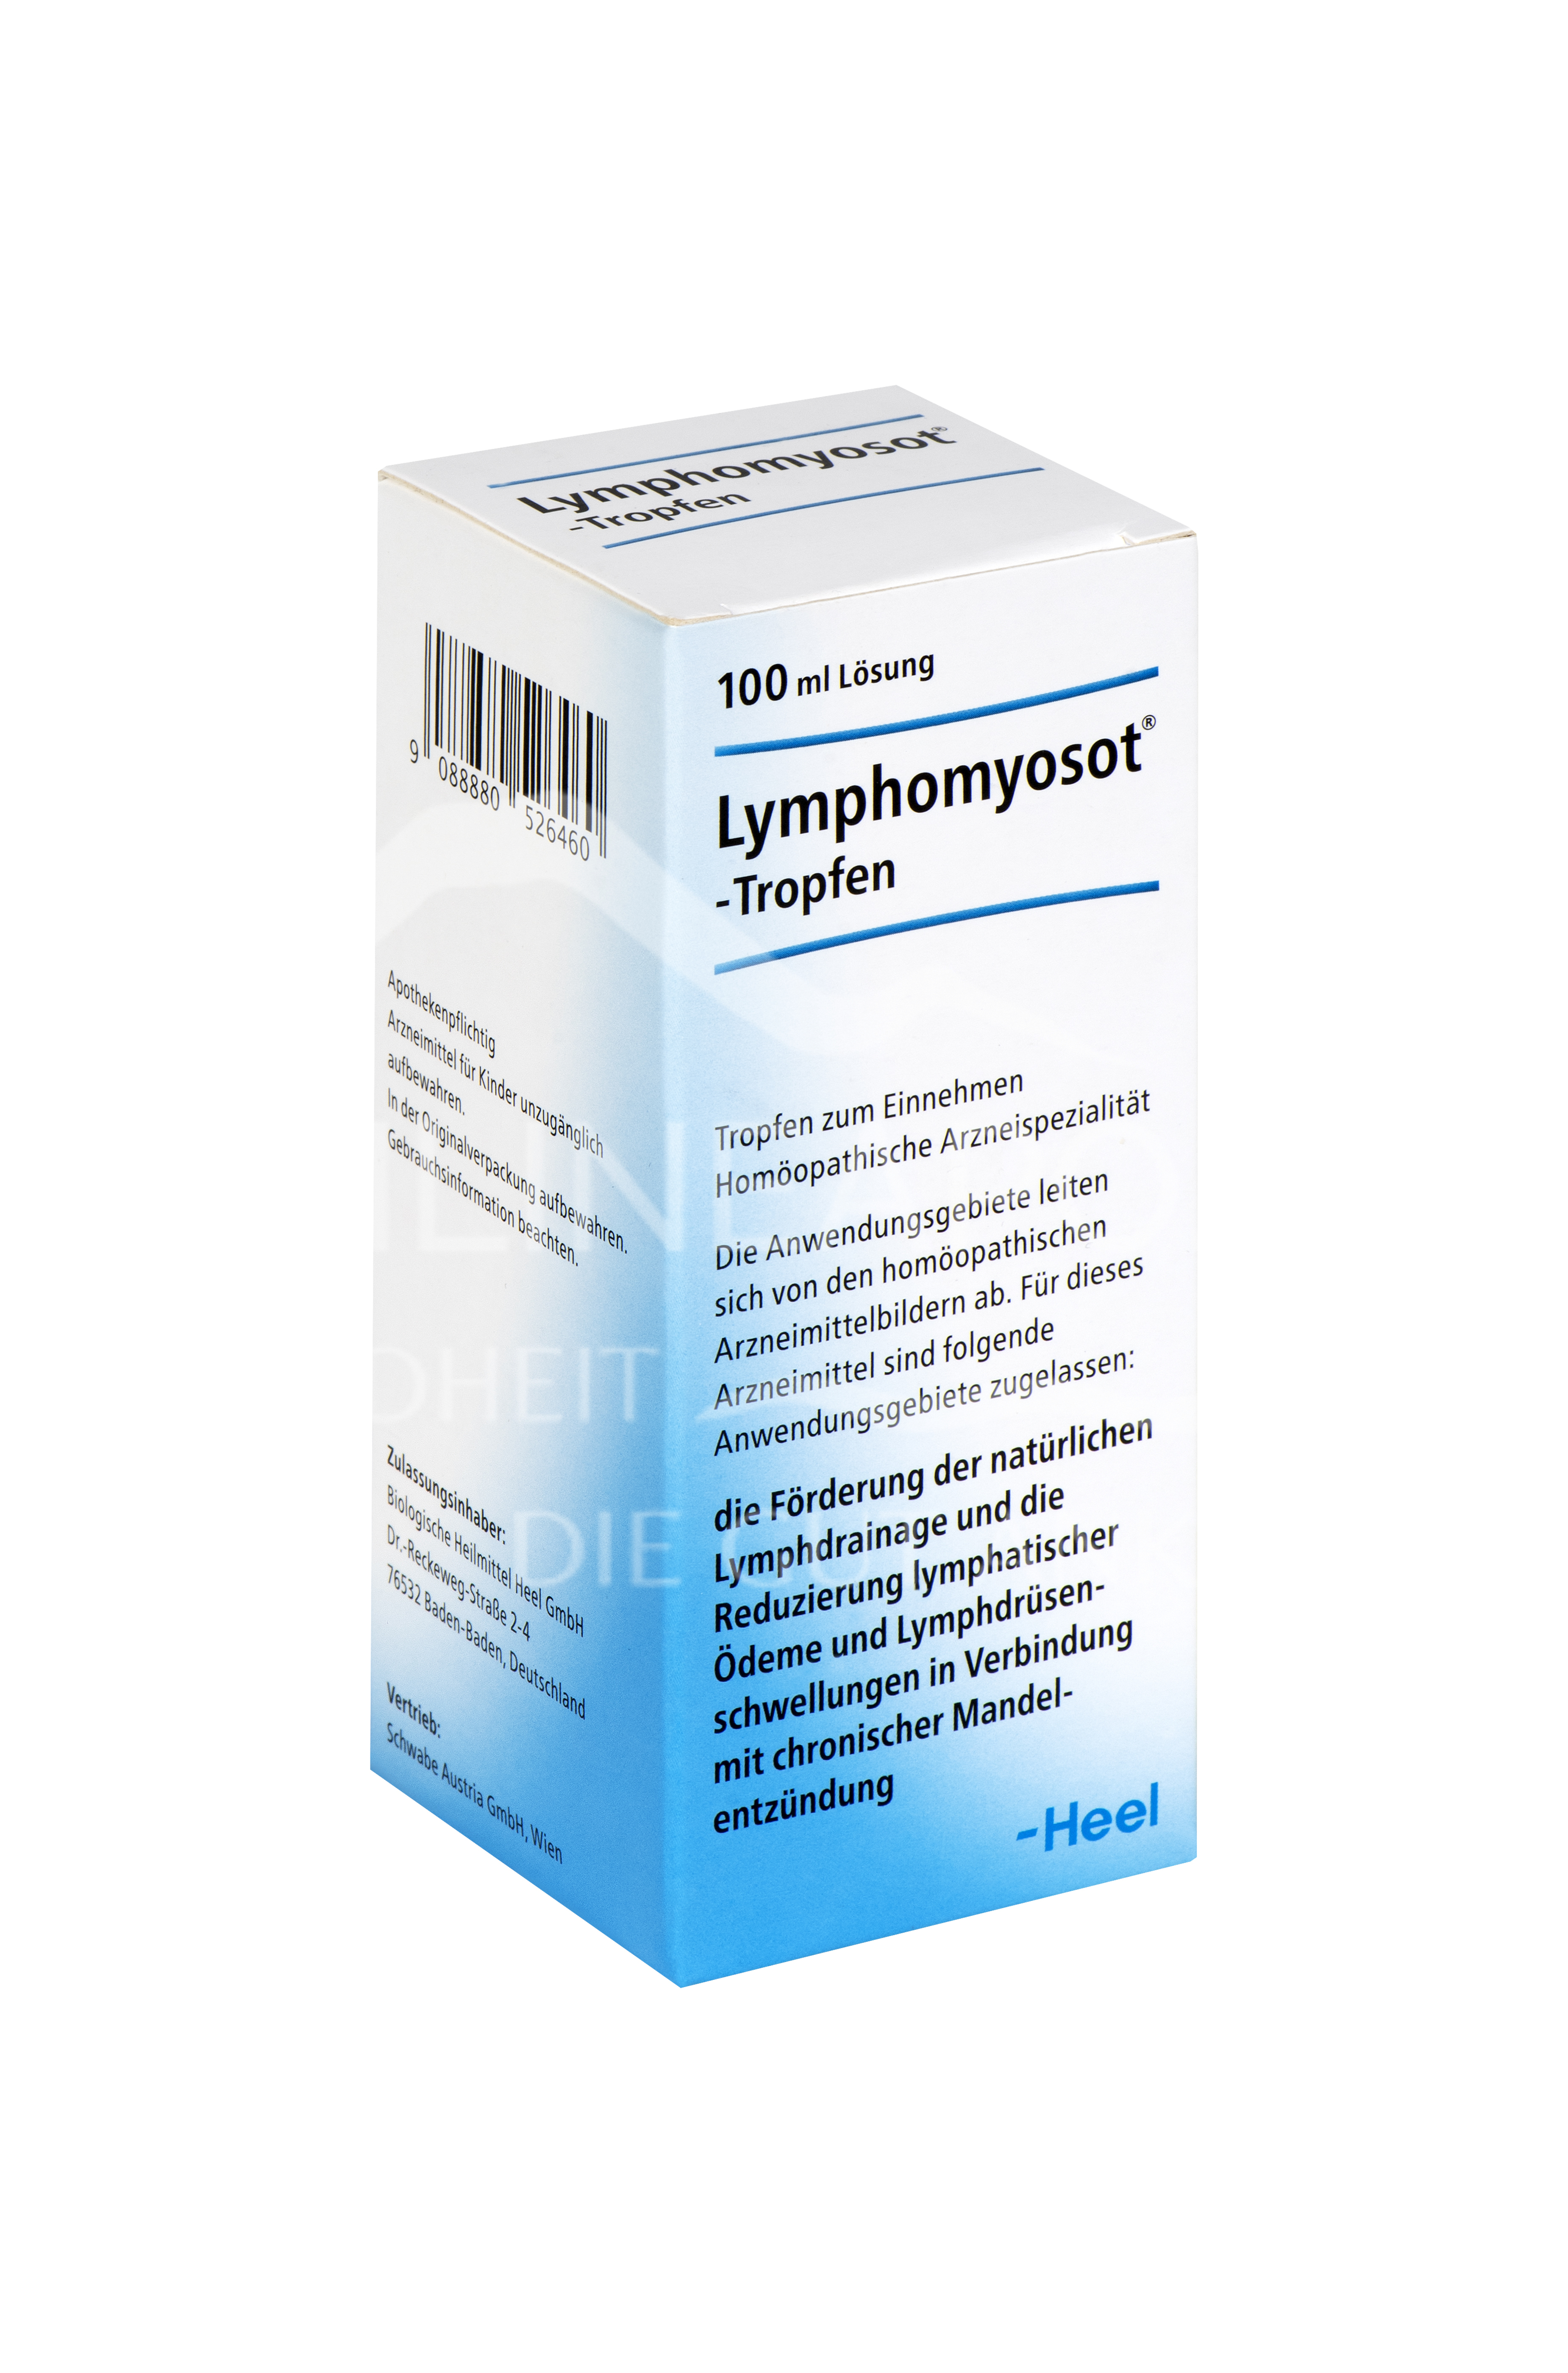 Lymphomyosot® Tropfen